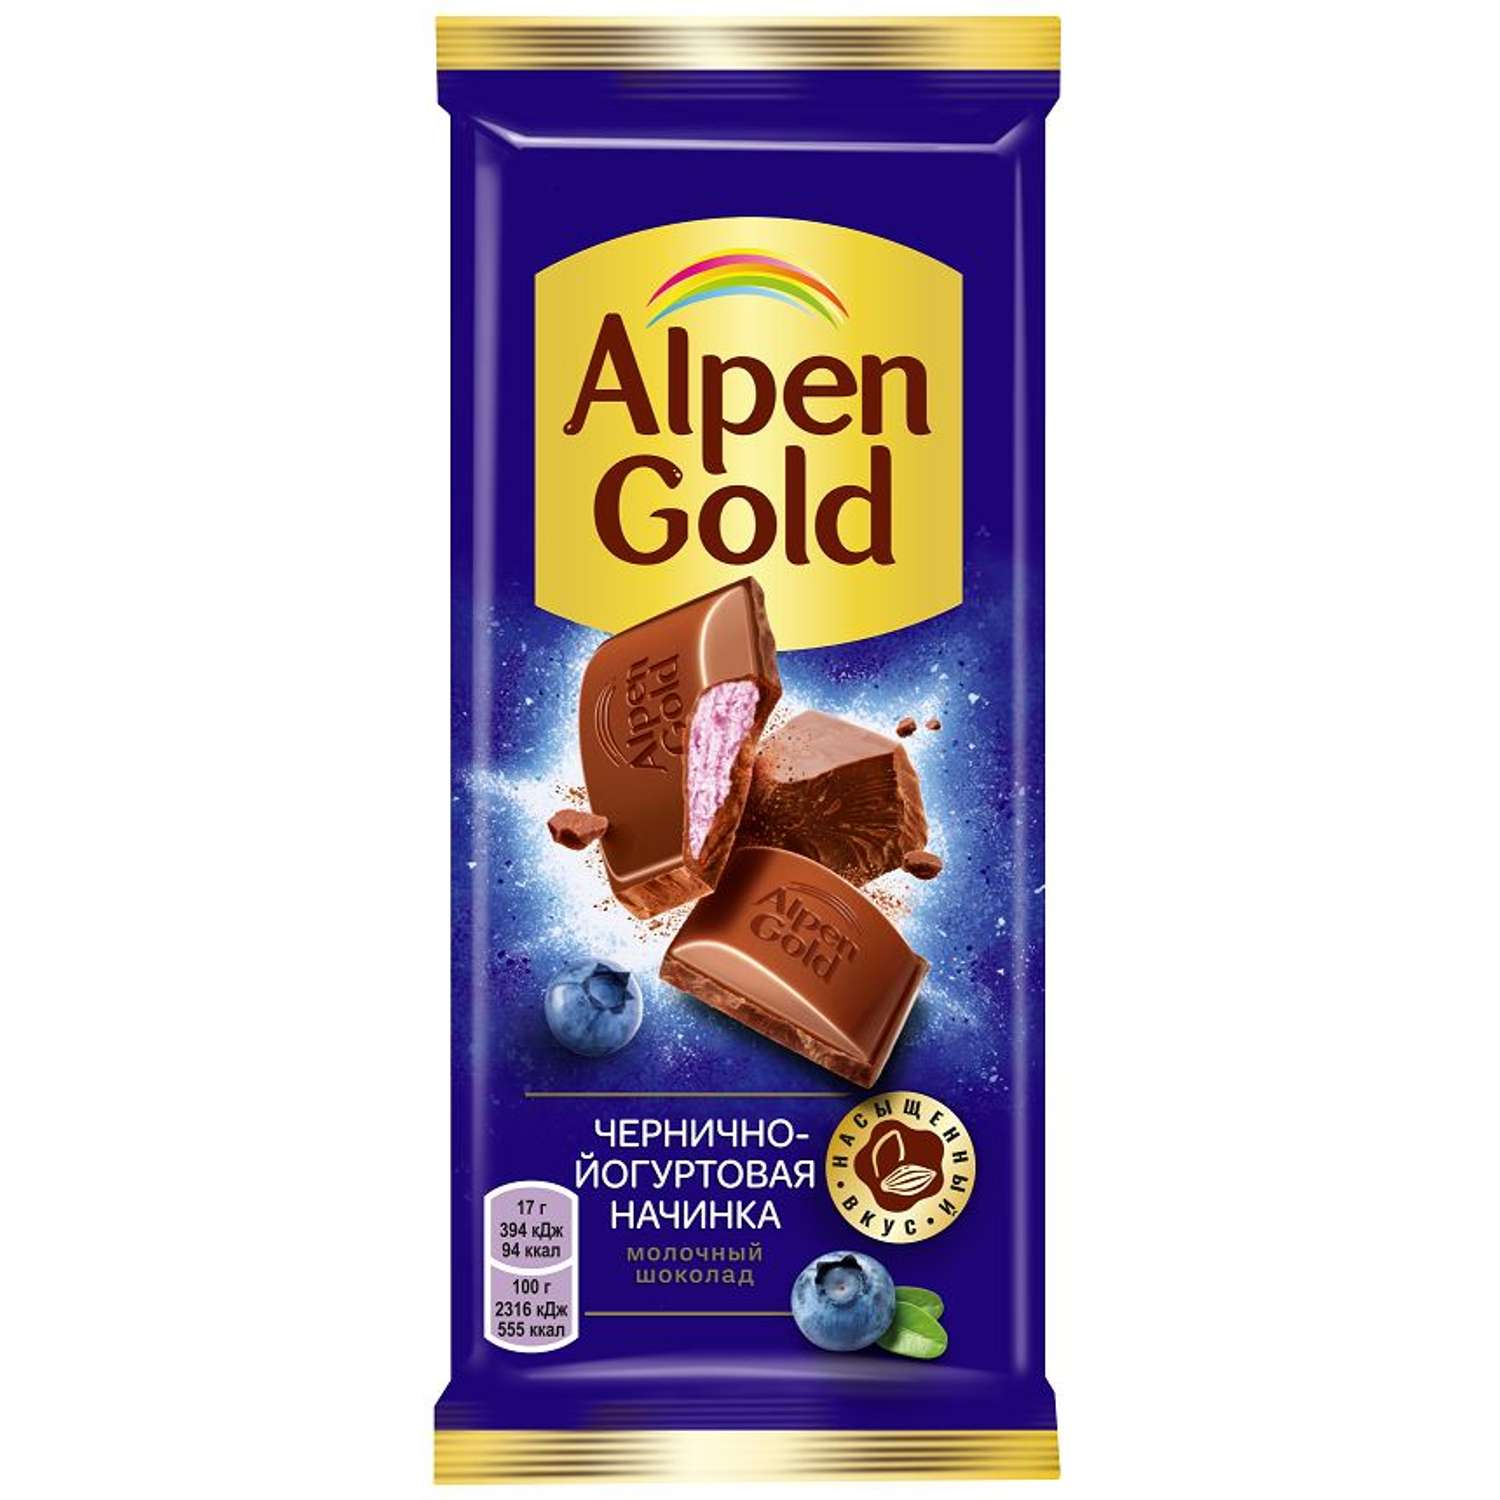 Шоколад Alpen Gold молочный с чернично-йогуртовой начинкой 85г - фото 1